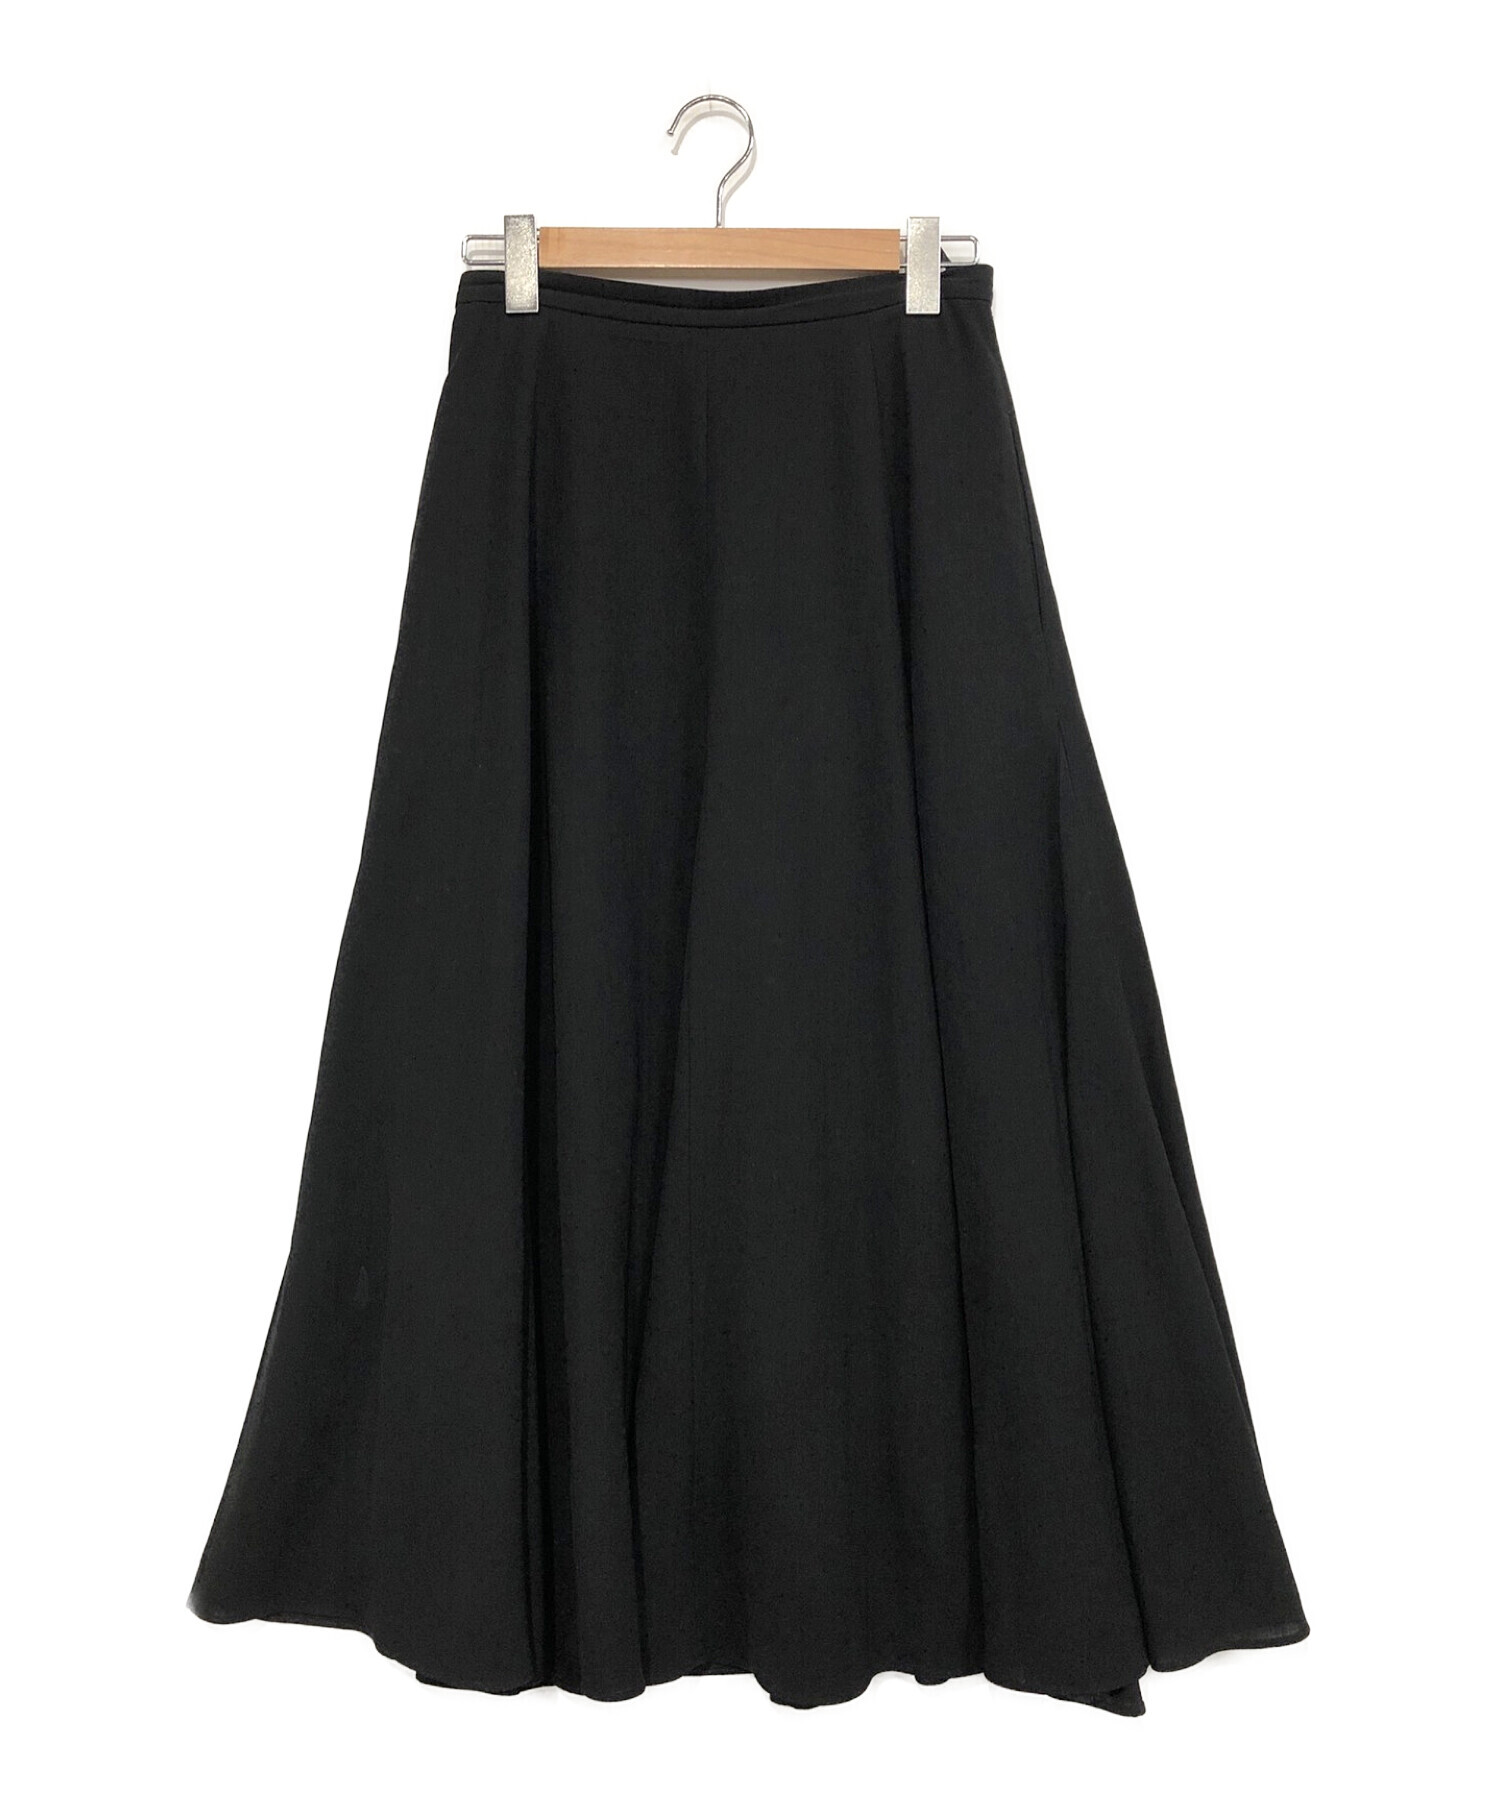 UNITED ARROWS (ユナイテッドアローズ) セミフレア ロングスカート ブラック サイズ:38